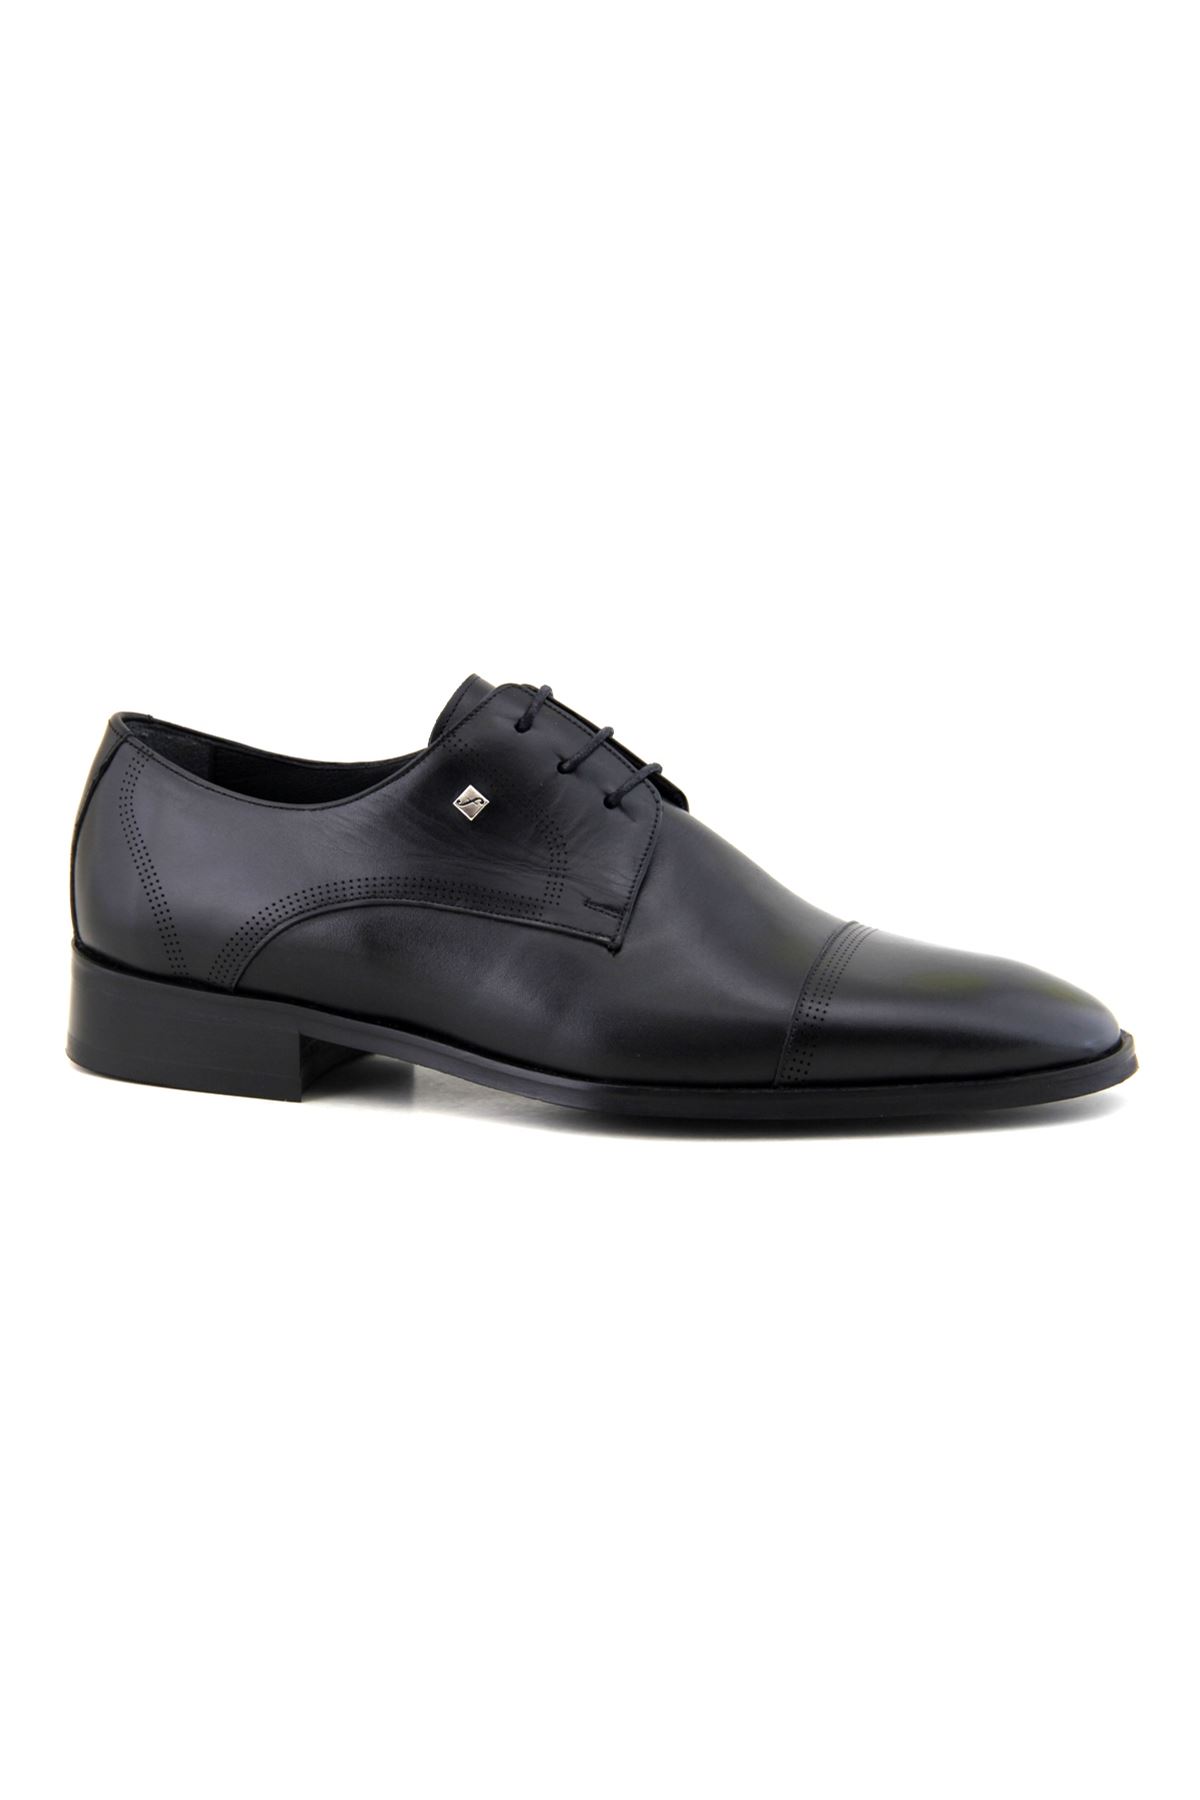 Fosco 2886 Hakiki Deri Klasik Erkek Ayakkabı - Siyah